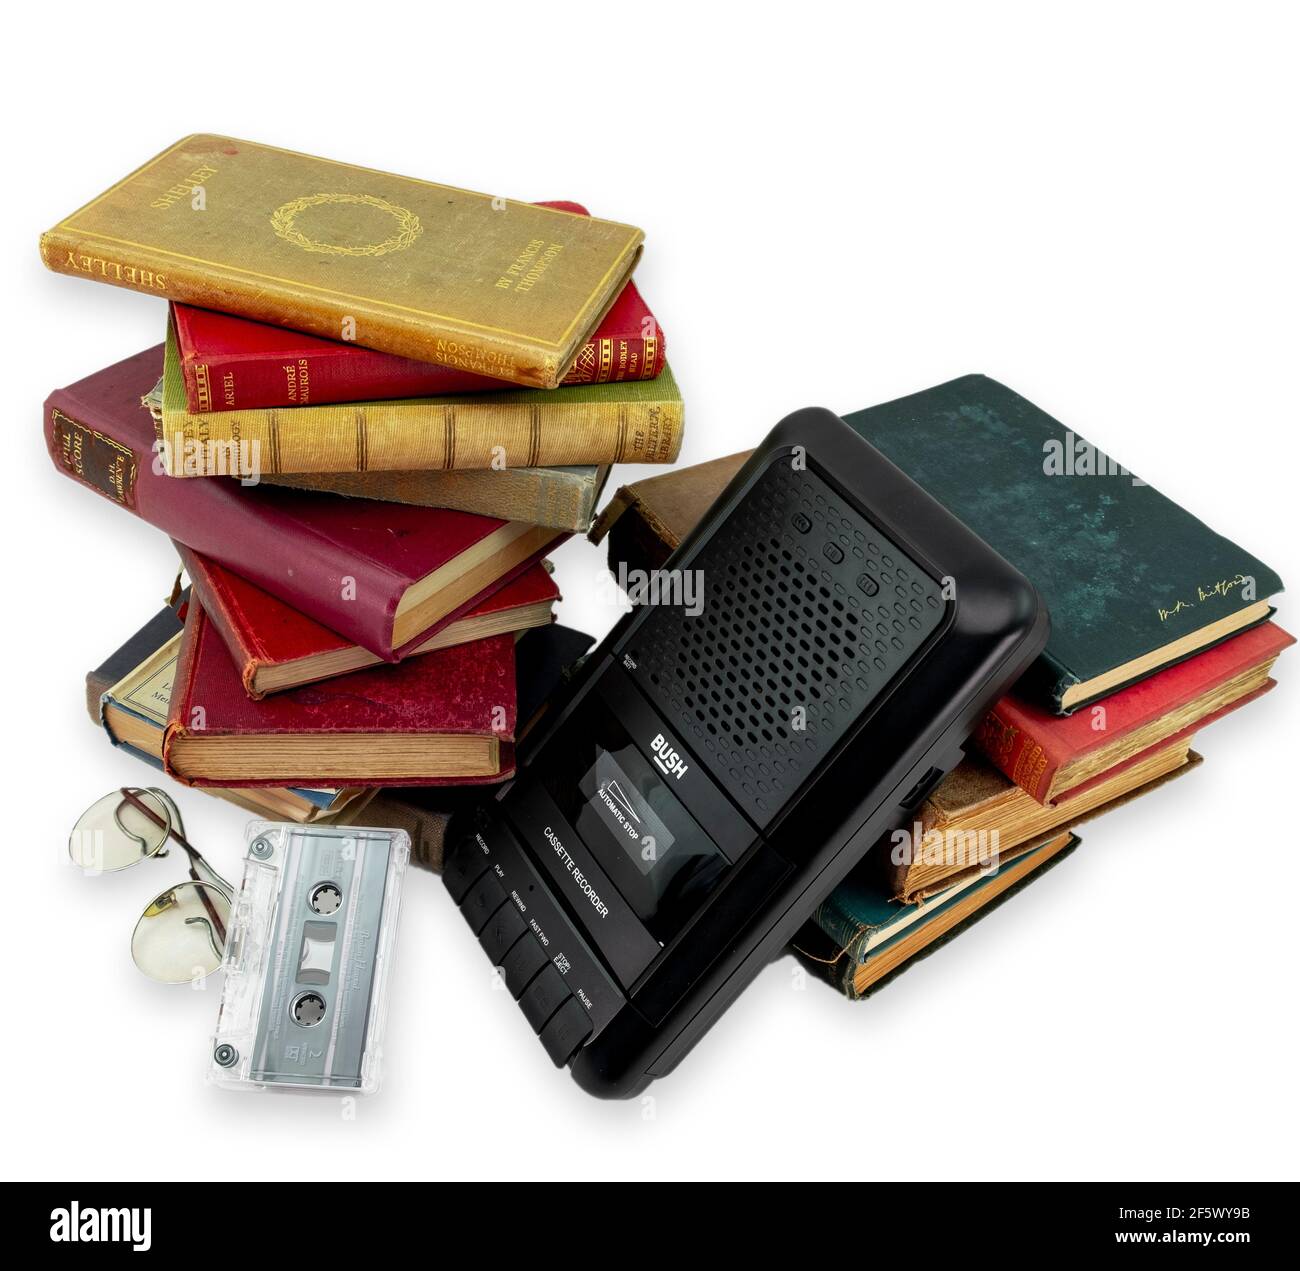 Radio audio rétro moderne et livres anciens anglais dans les coulisses arrière-plan blanc Banque D'Images